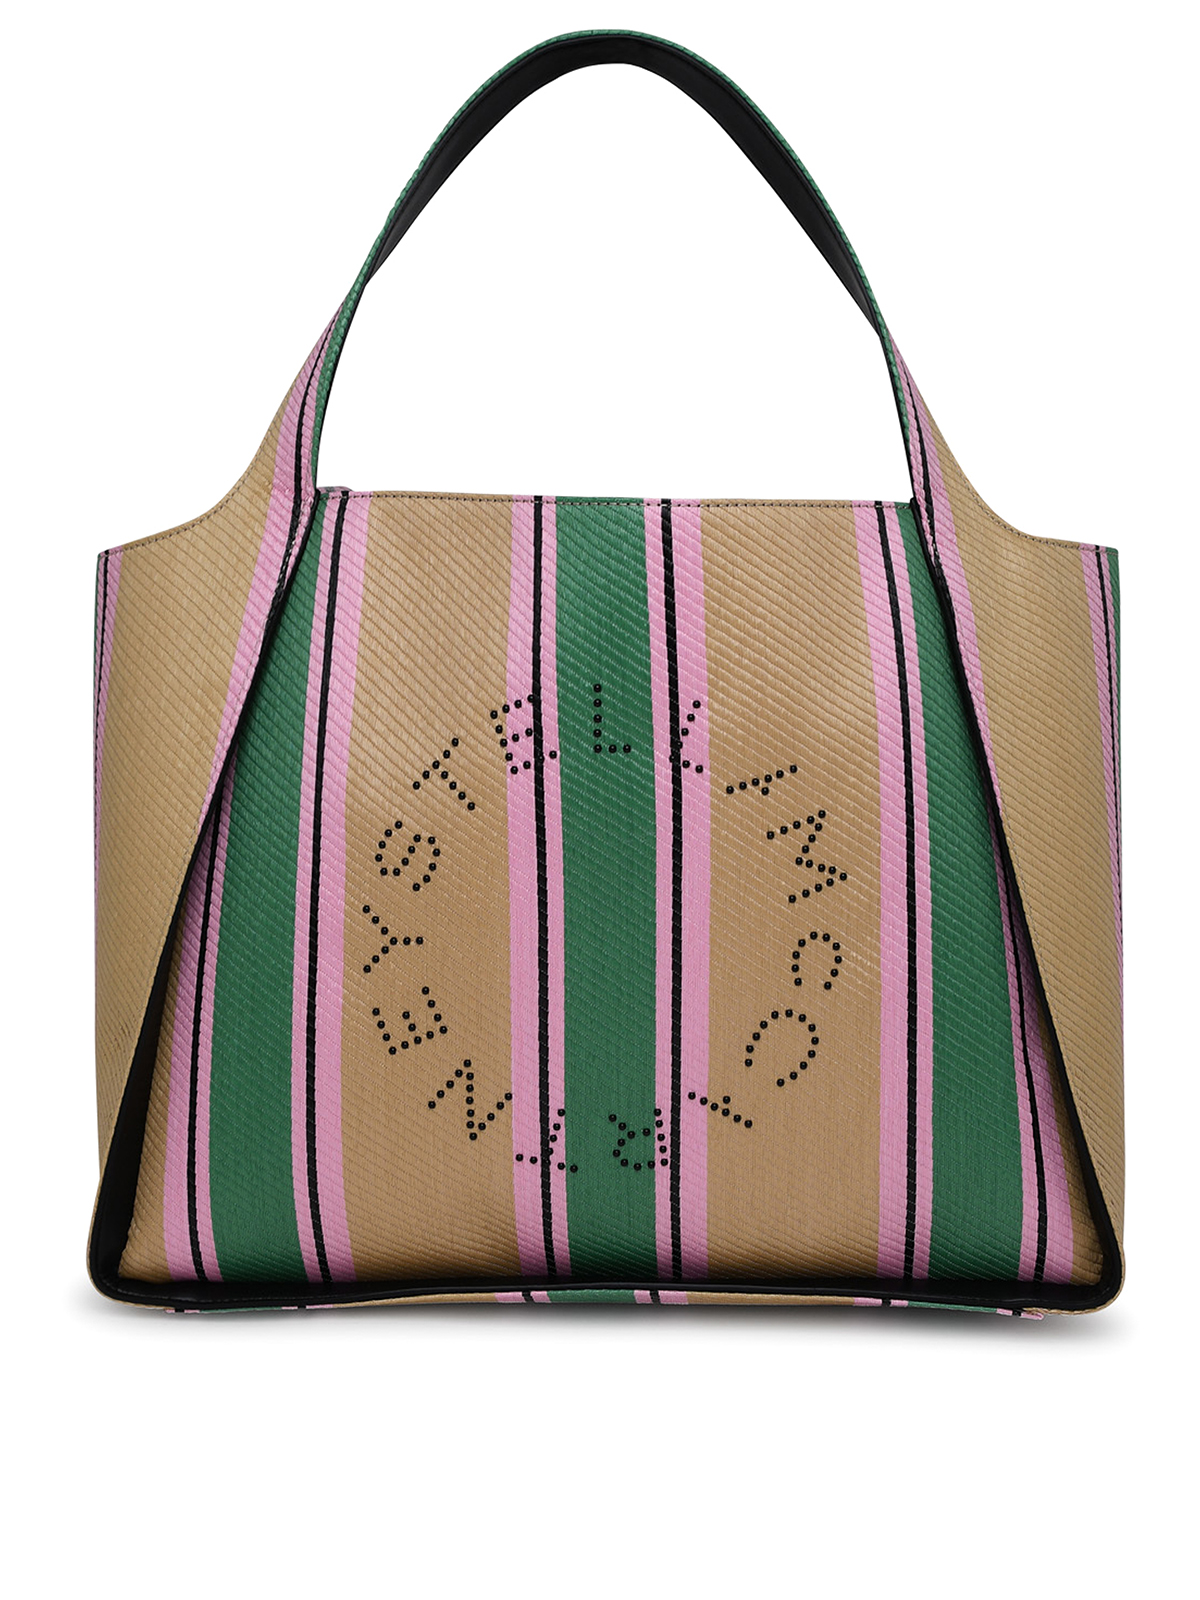 Stella Mccartney Bag In Multicolored Raffia In Multicolour